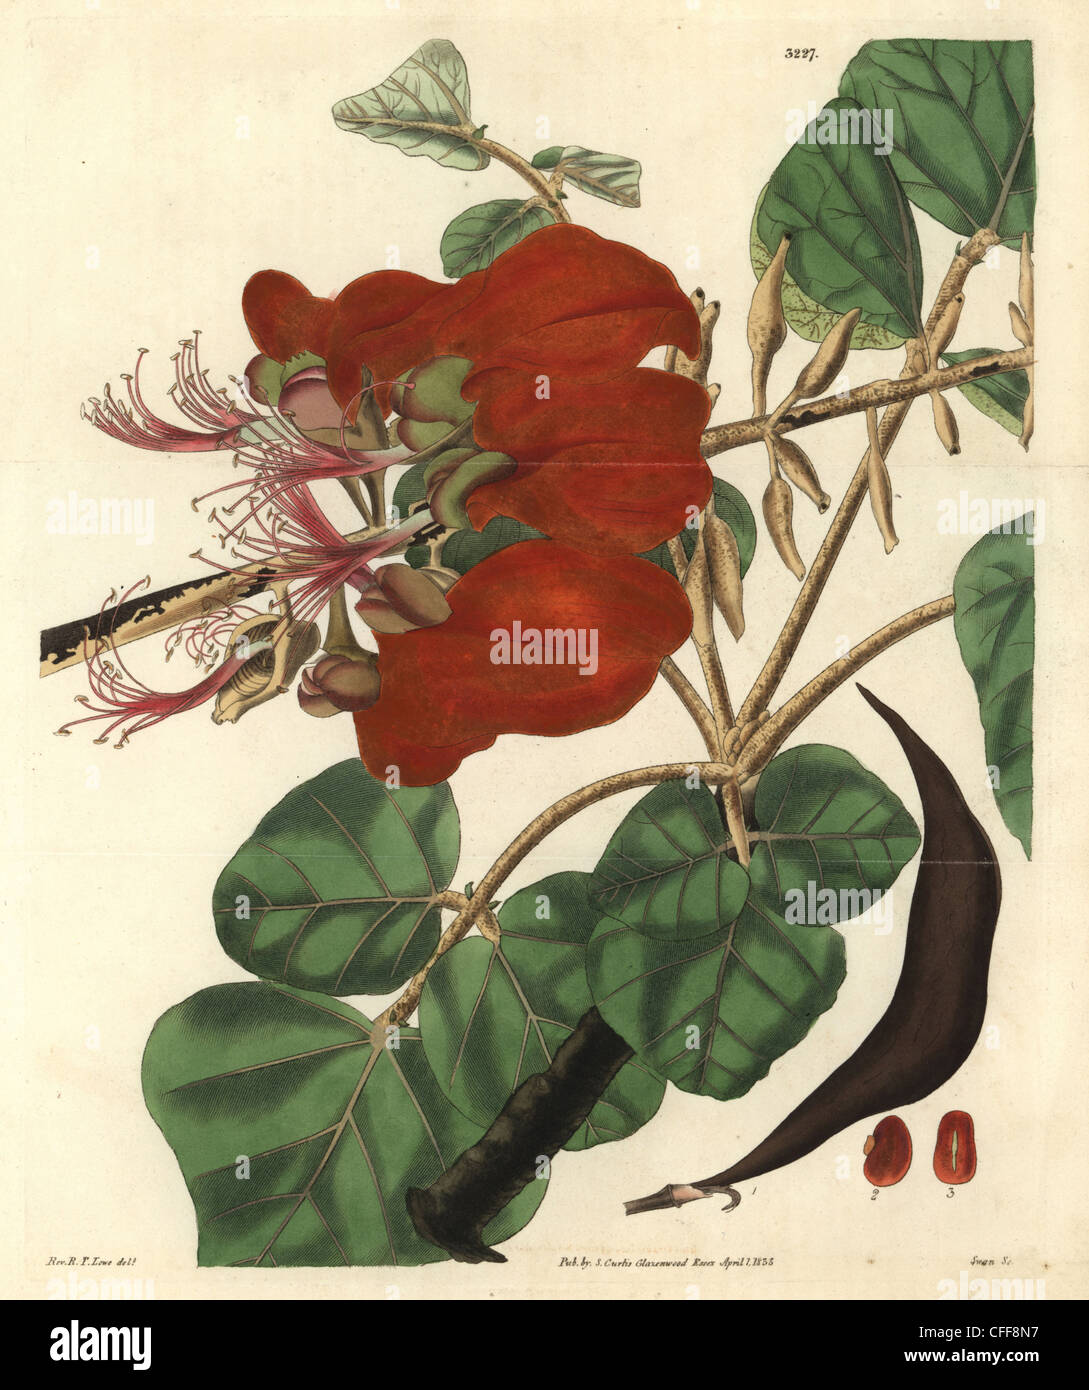 Velvety erythrina, Erythrina velutina. Stock Photo